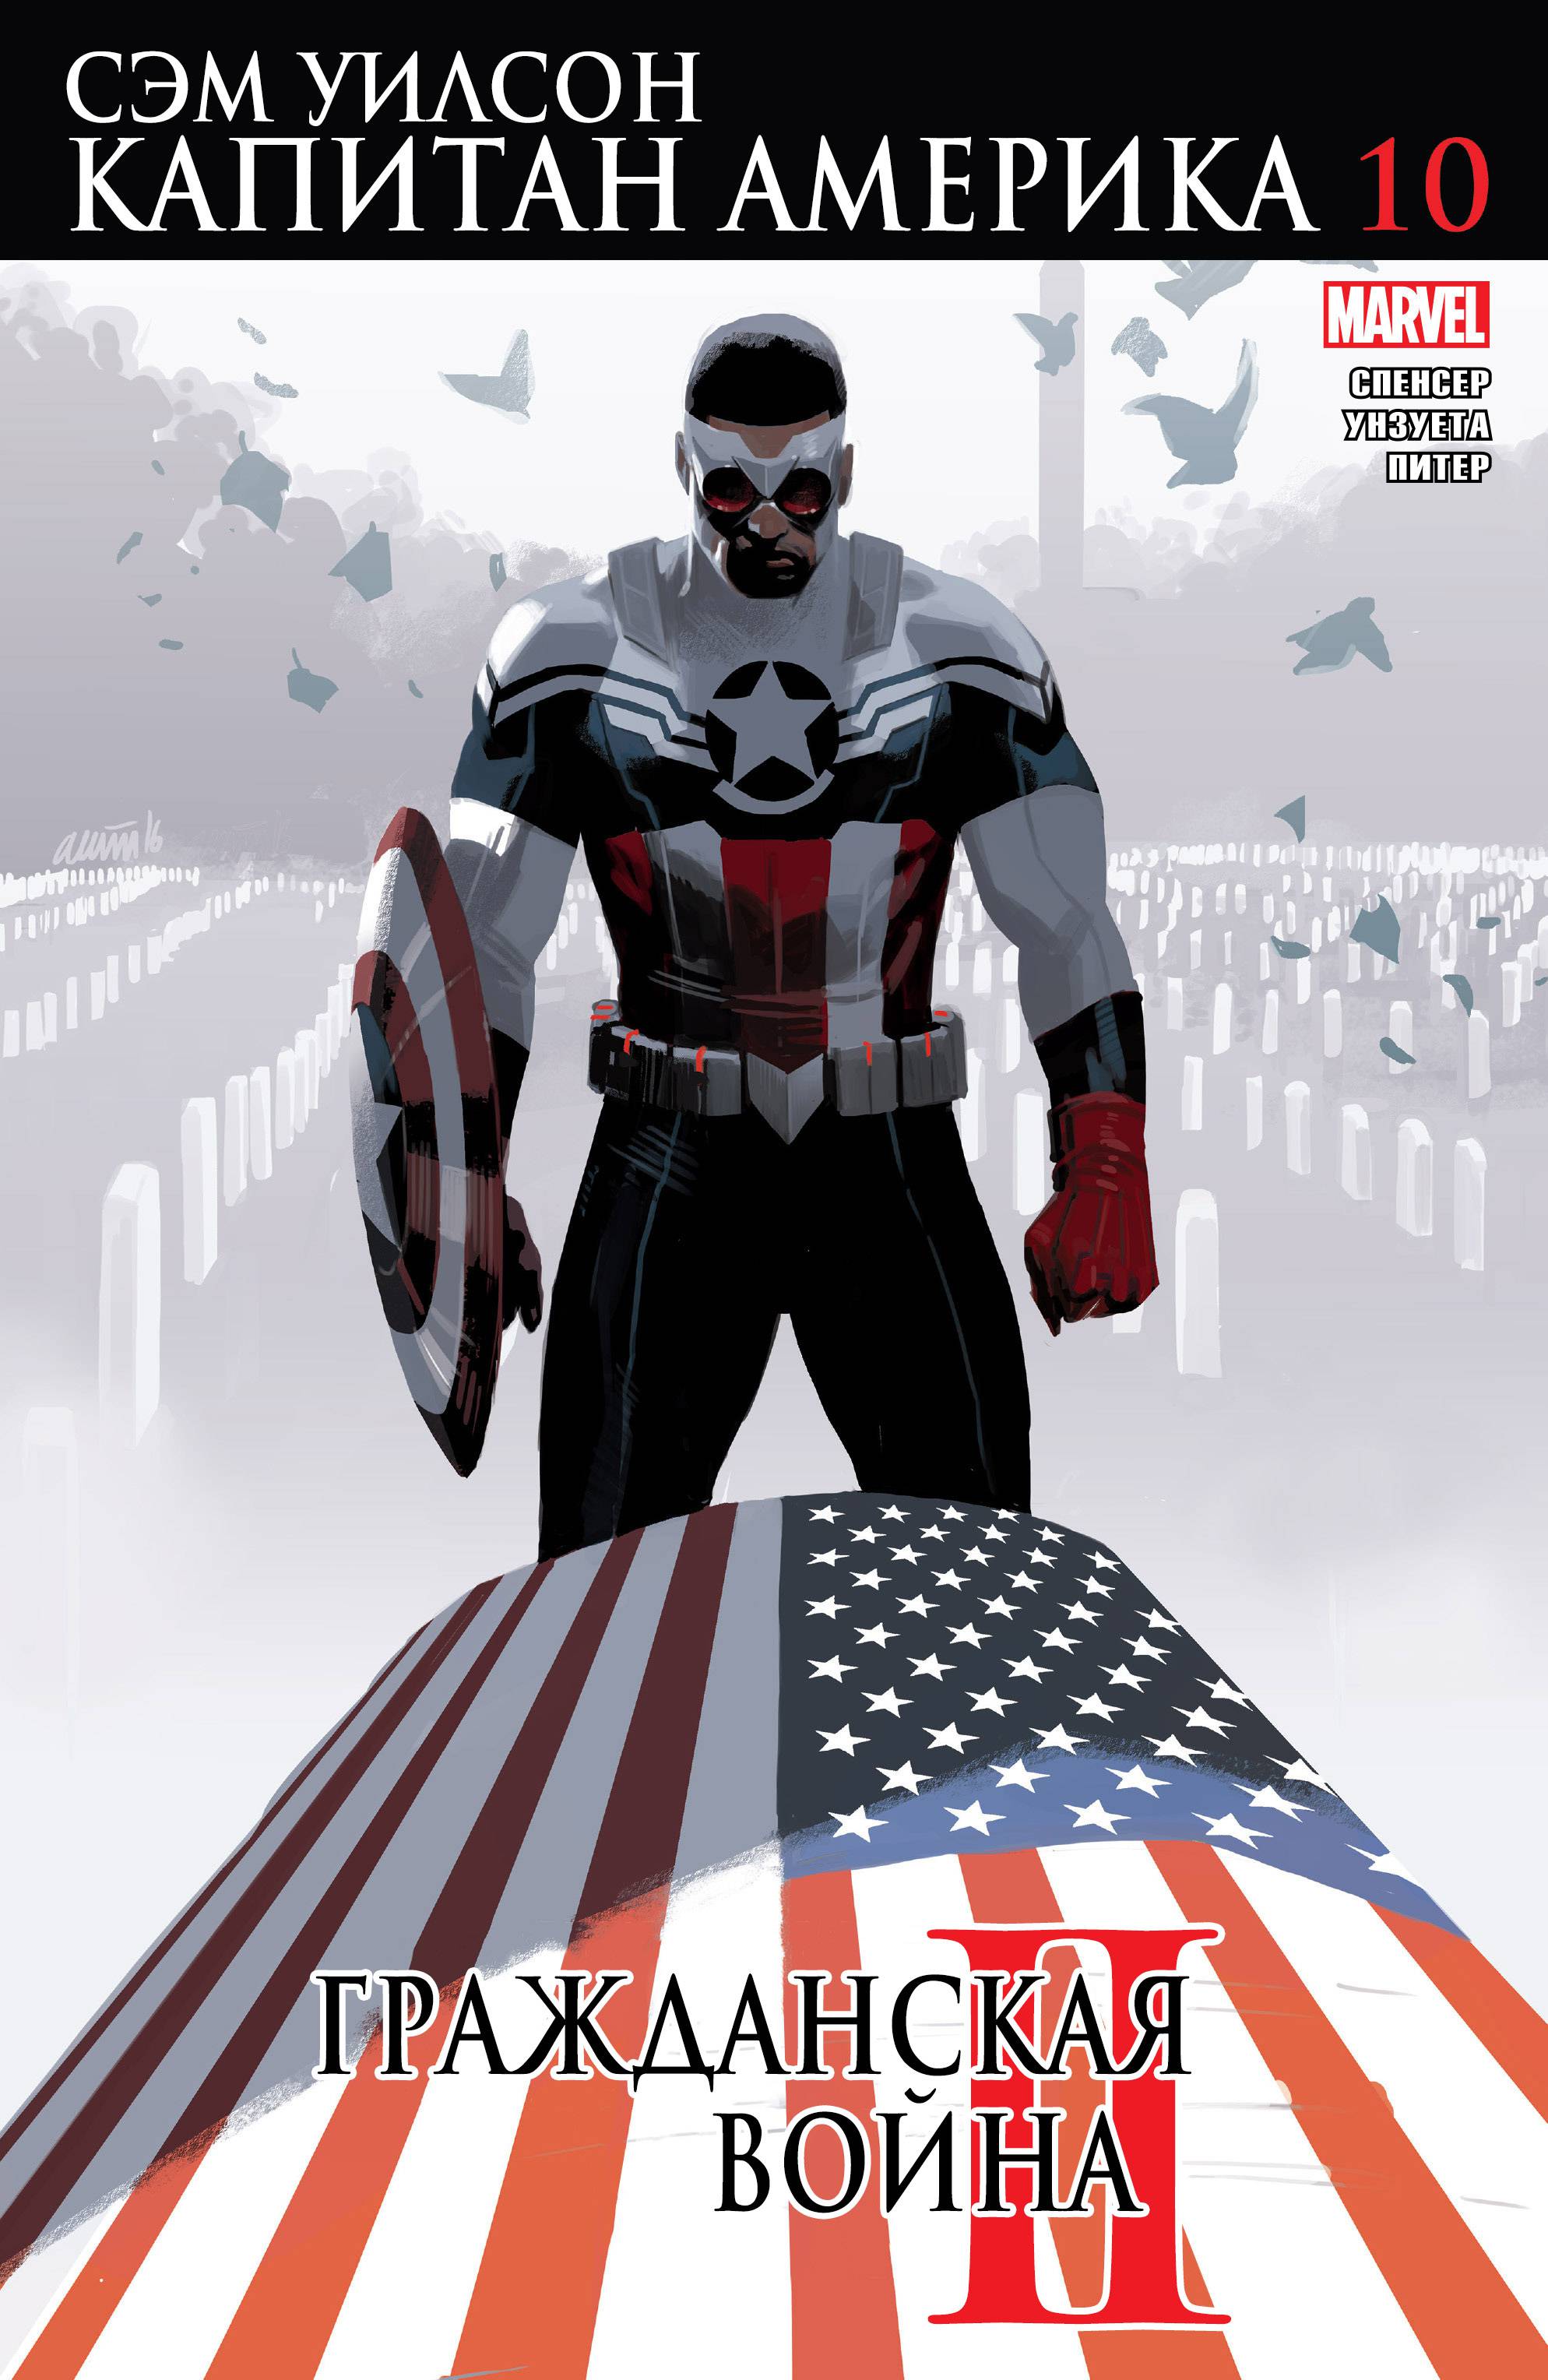 Капитан Америка: Сэм Уилсон №10 онлайн